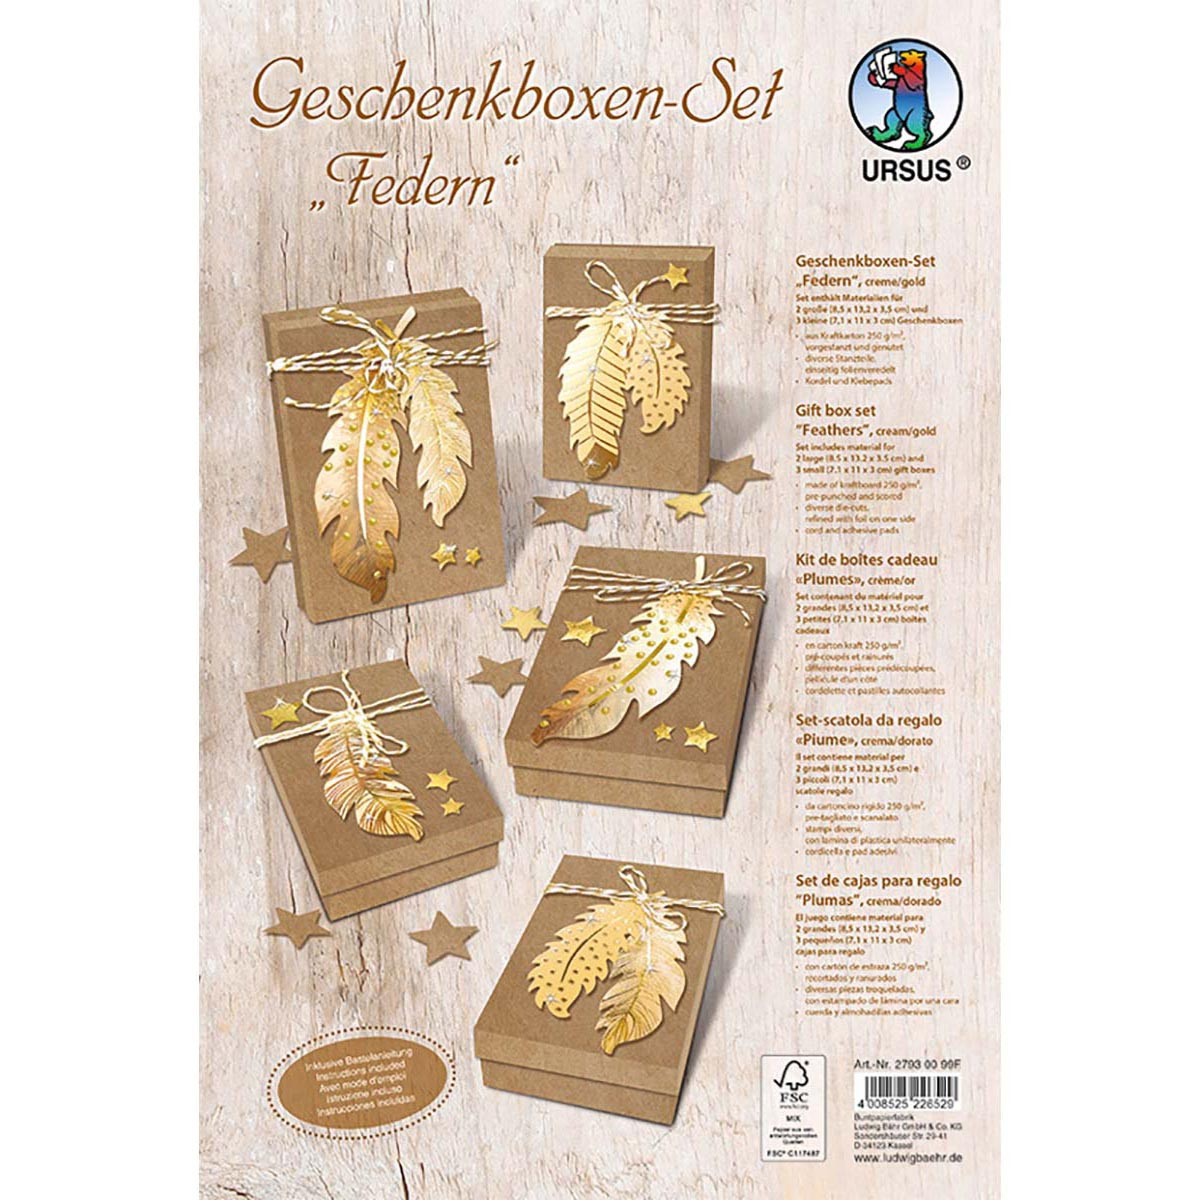 Geschenkboxen-Set "Federn" creme / gold